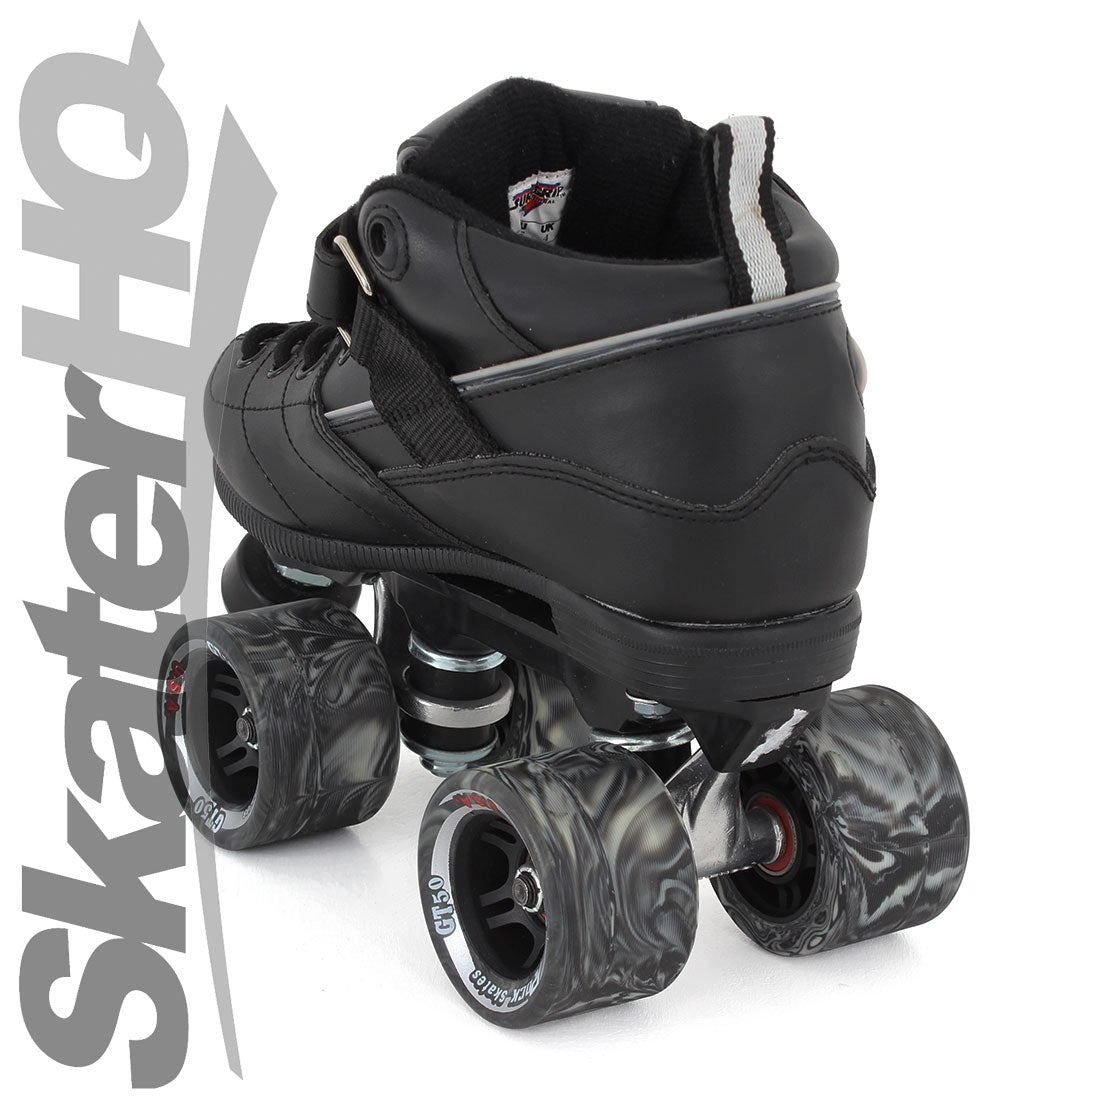 Sure-Grip Rock GT50 Black 1US/ EU32 Roller Skates